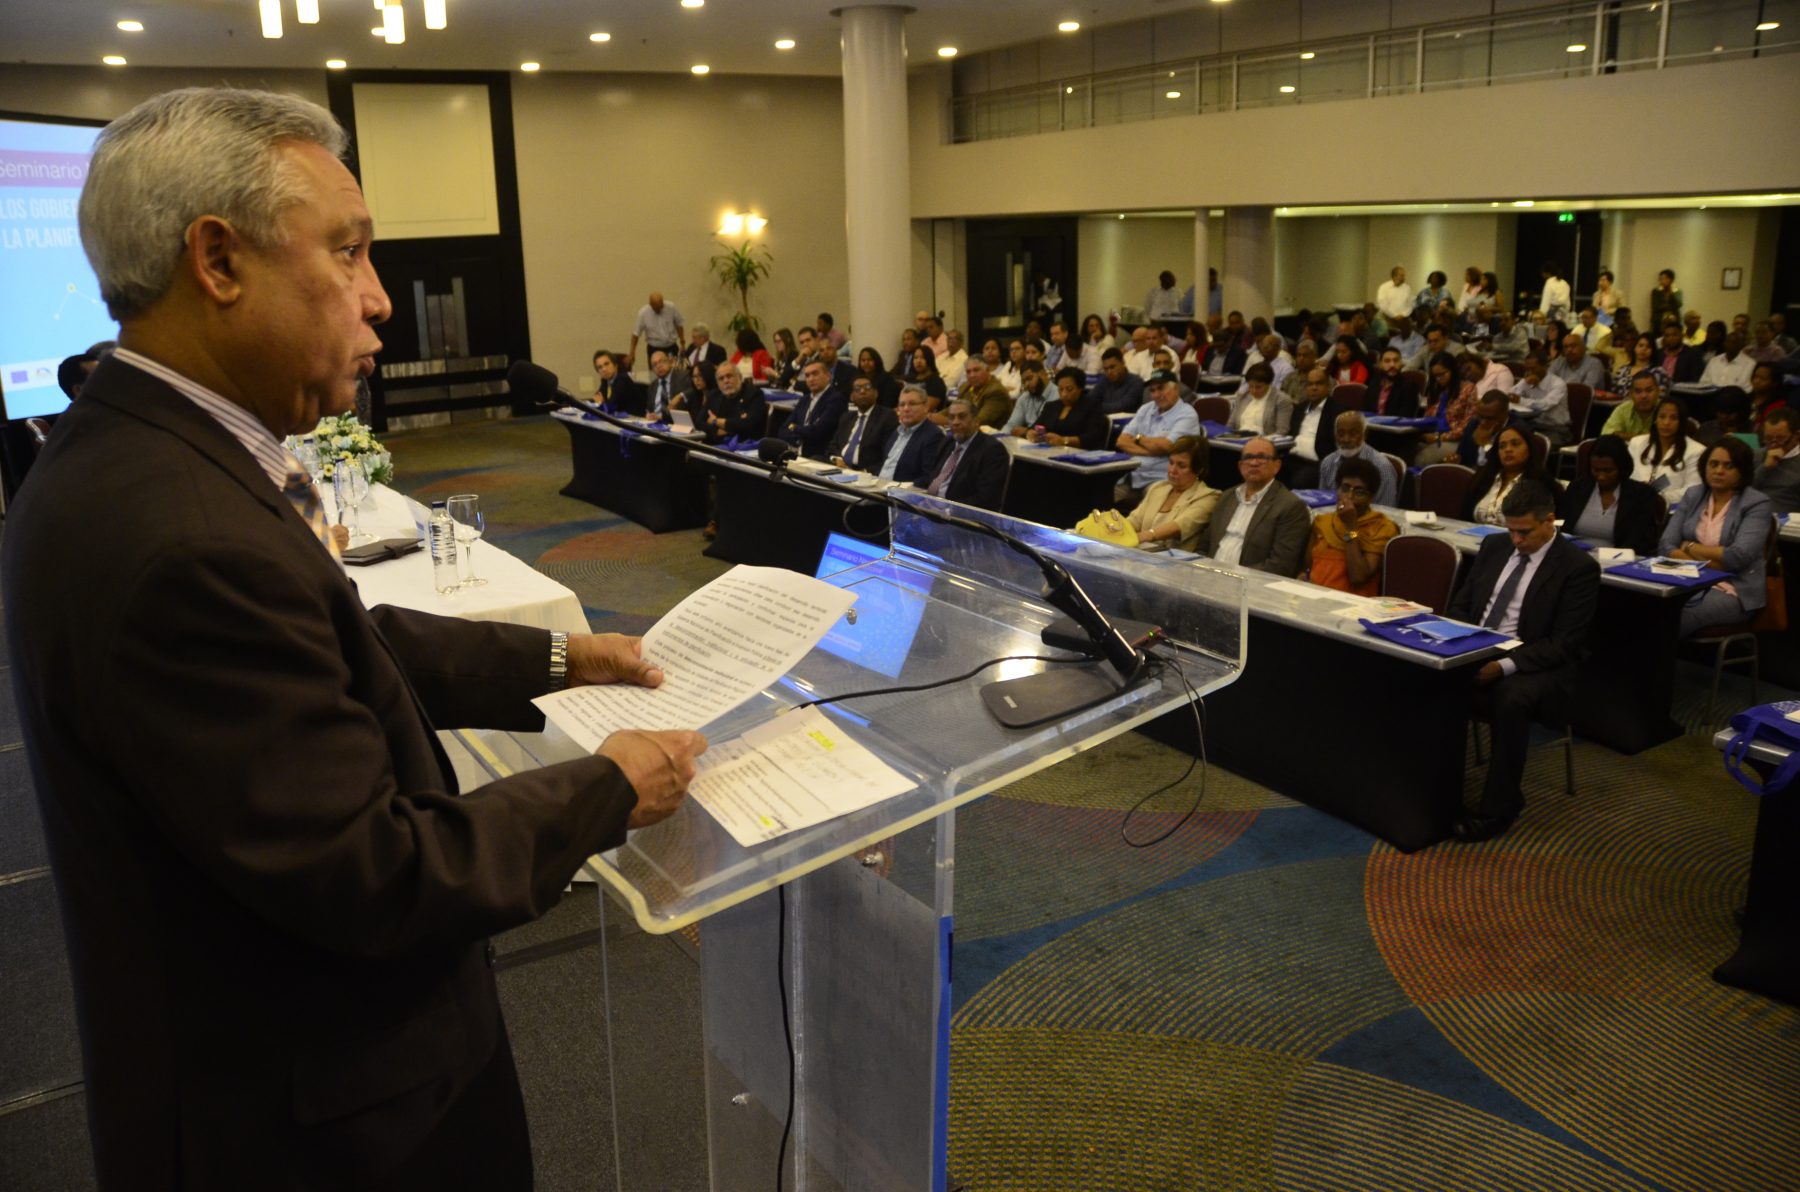 El ministro Isidoro Santana habla a los munícipes en el auditorio del Seminario "Los Gobiernos Locales en la Planificación del Territorio" organizado por la Federación Dominicana de Municipios (FEDOMU) y el MEPyD en el hotel Crowne Plaza, en el malecón de esta capital.